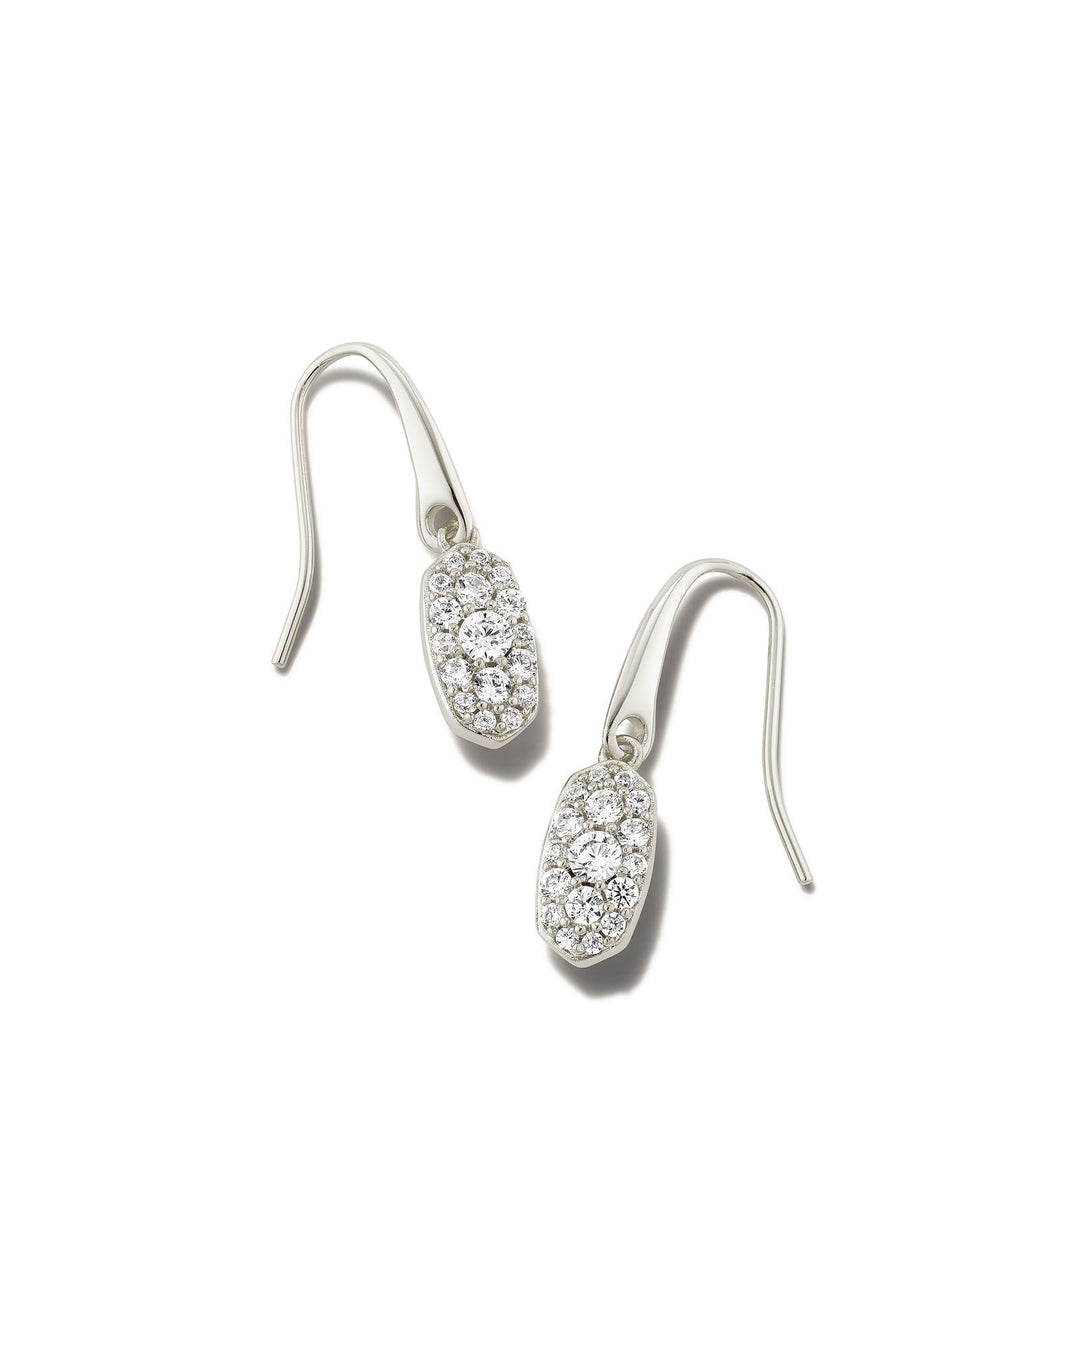 Kendra Scott Grayson Crystal Drop Earrings in Silver